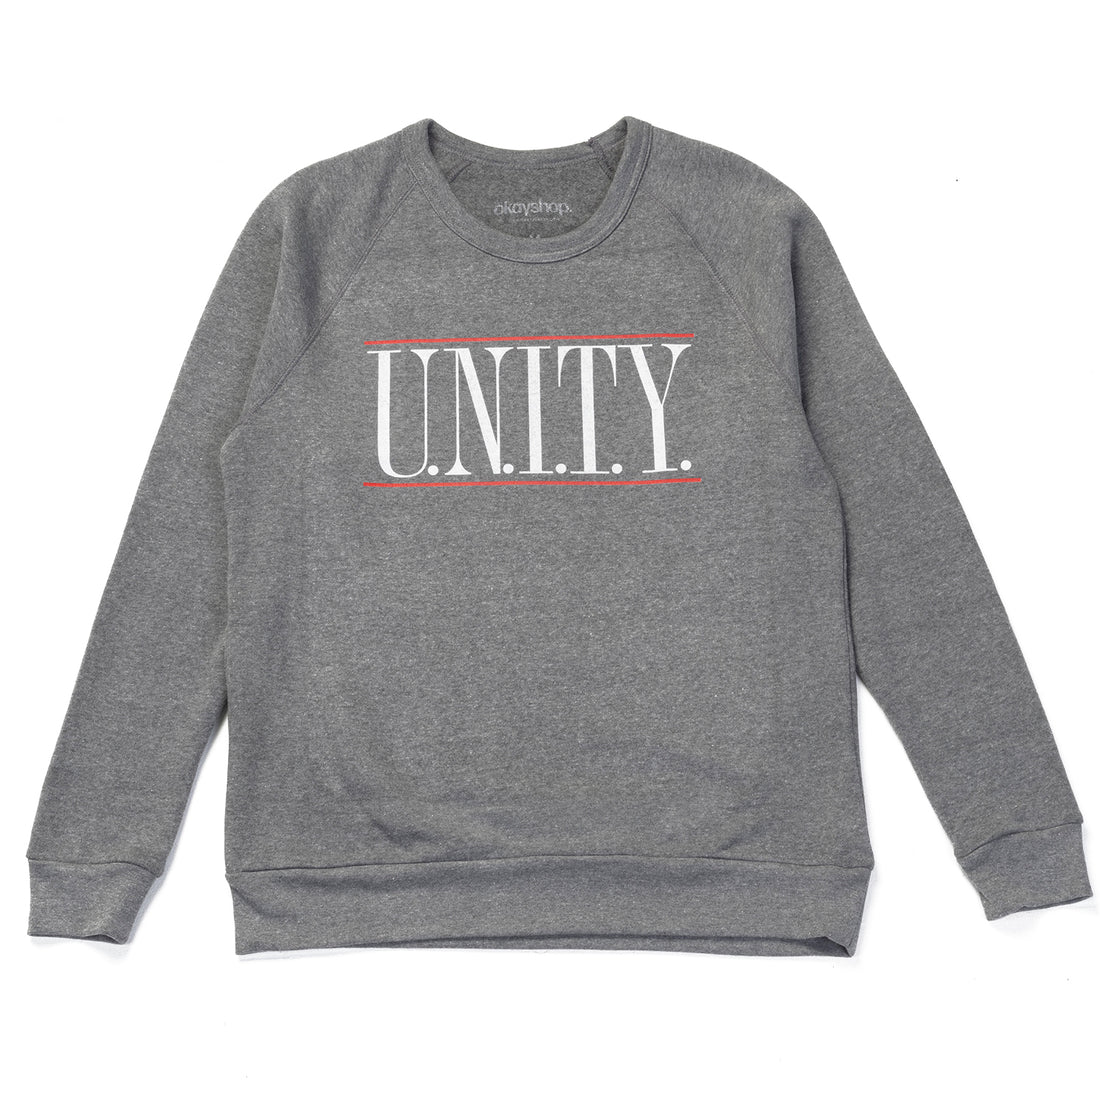 U.N.I.T.Y. Alternative Apparel Crewneck Sweatshirt